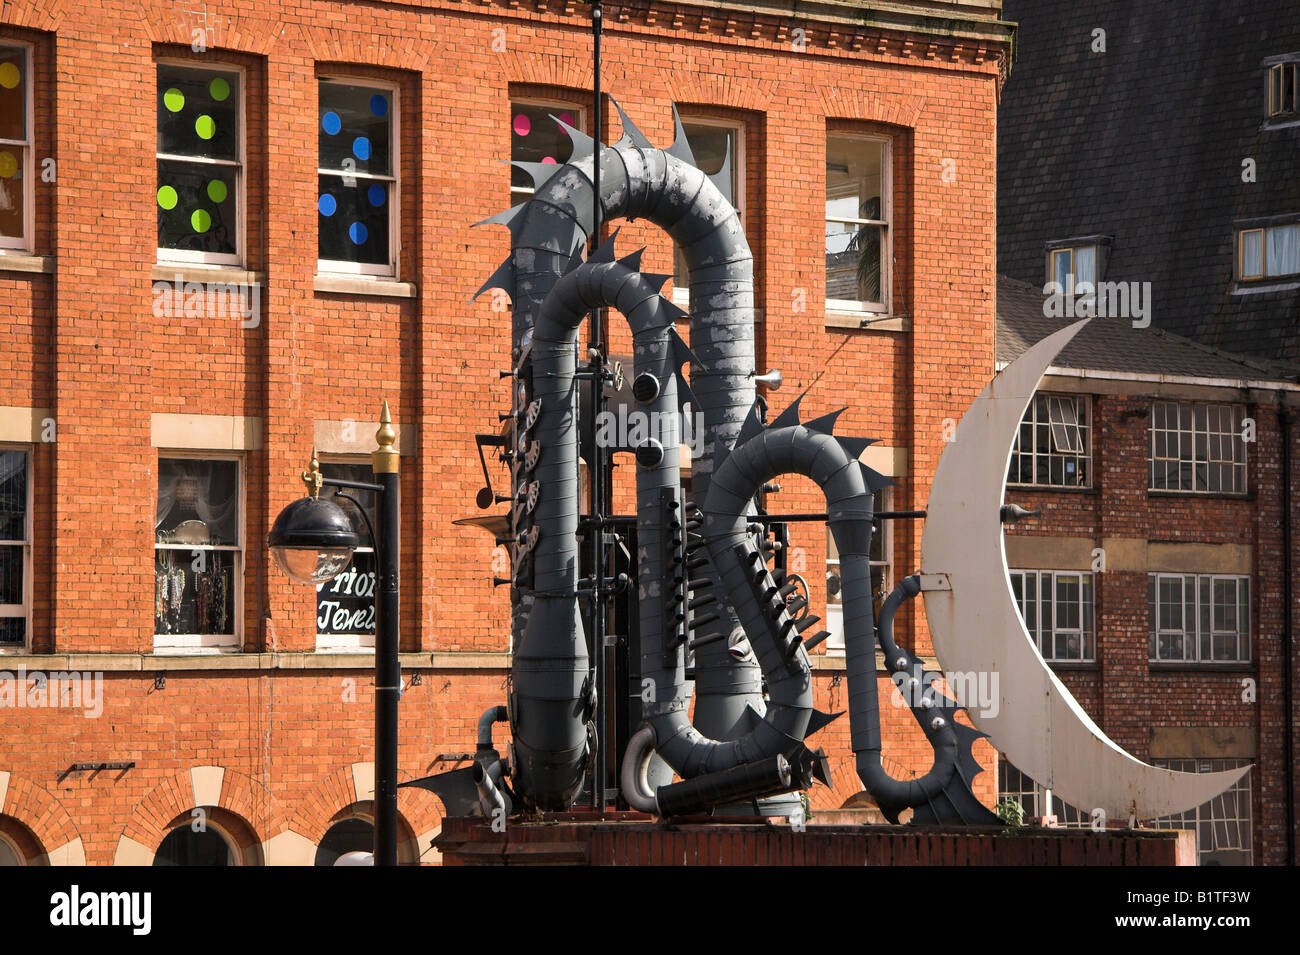 Gigacorno scultura, Tib Street accanto al Palazzo Affleck, Church Street Junction, Northern Quarter, Manchester, Regno Unito Foto Stock